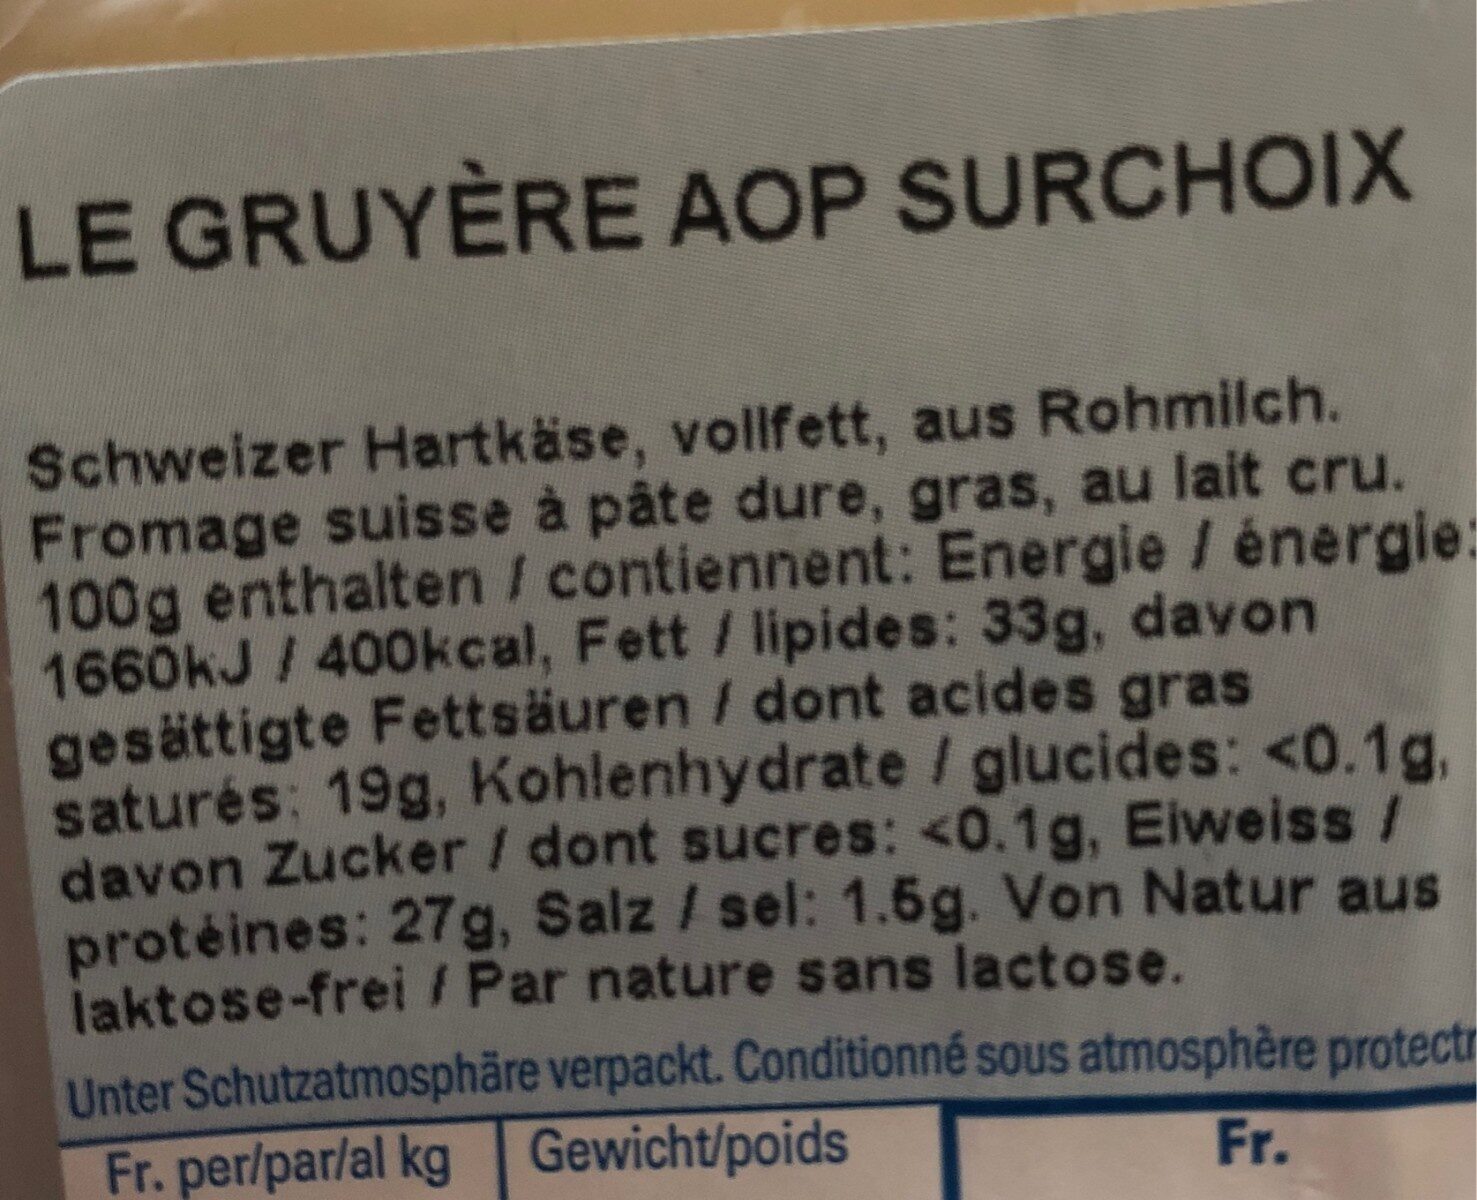 Le Gruyère AOP Surchoix - Ingredients - fr